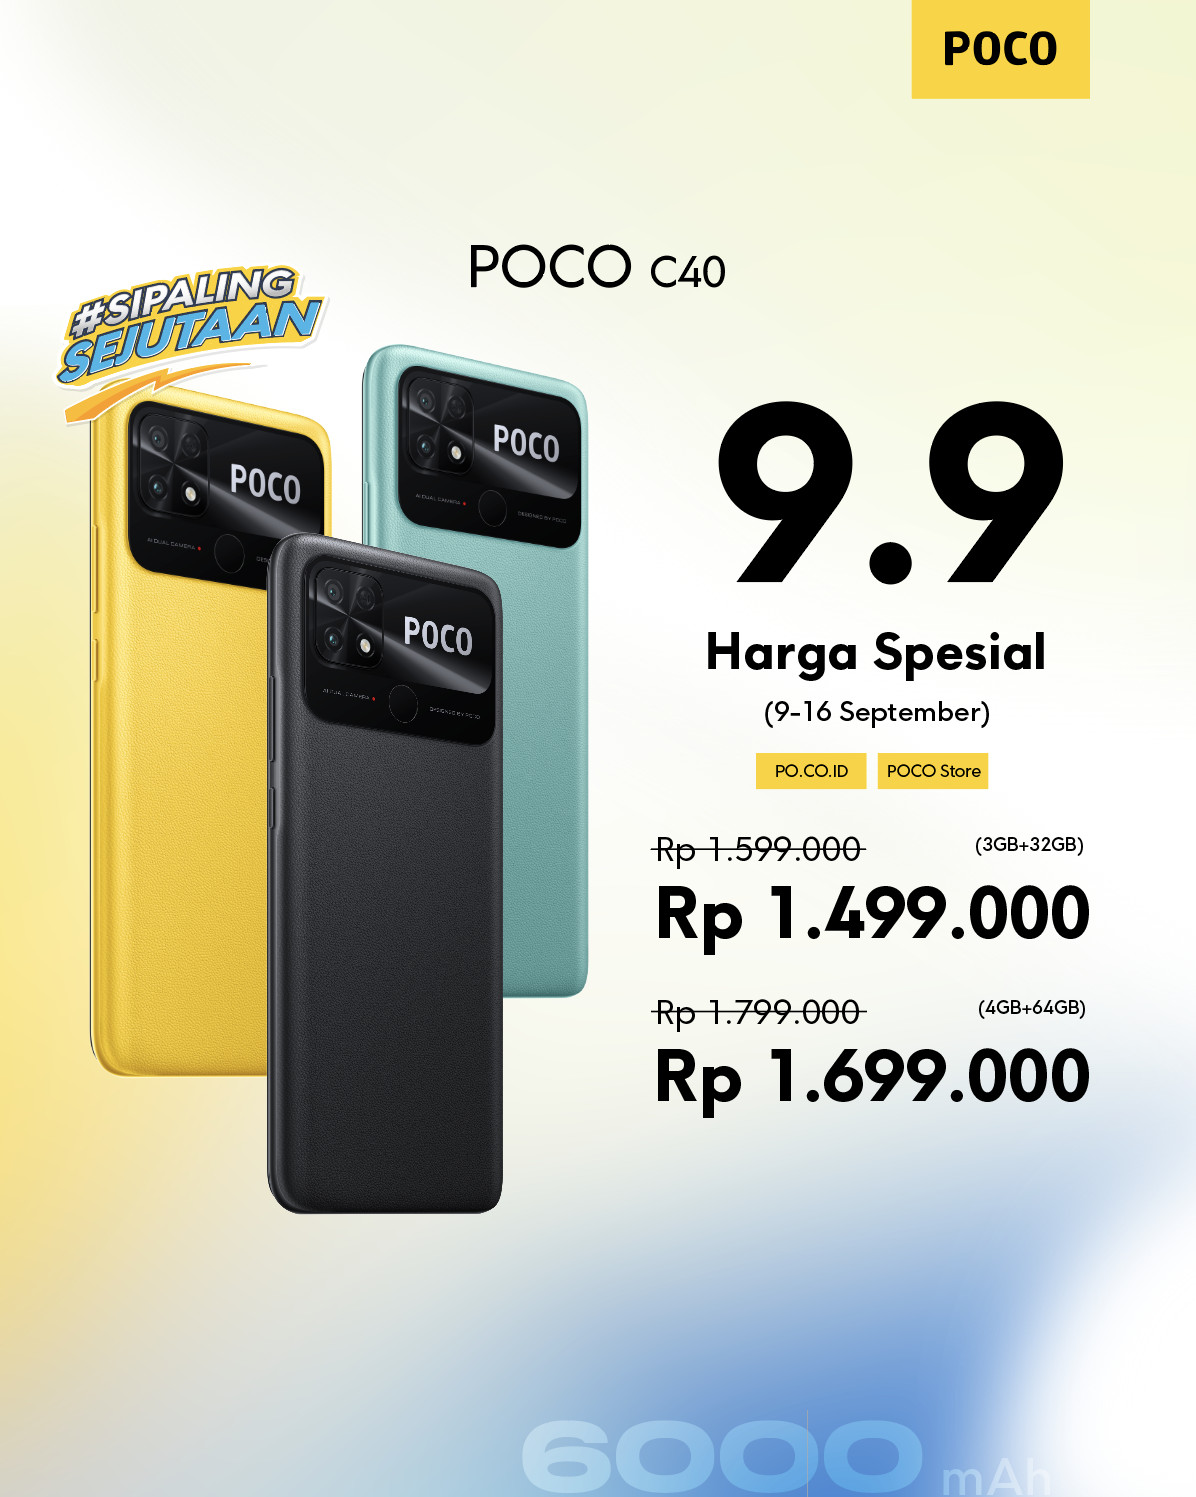 Poco C40 Siap Dijual Perdana Pada Harbolnas 9.9, Tawarkan Berbagai Promo